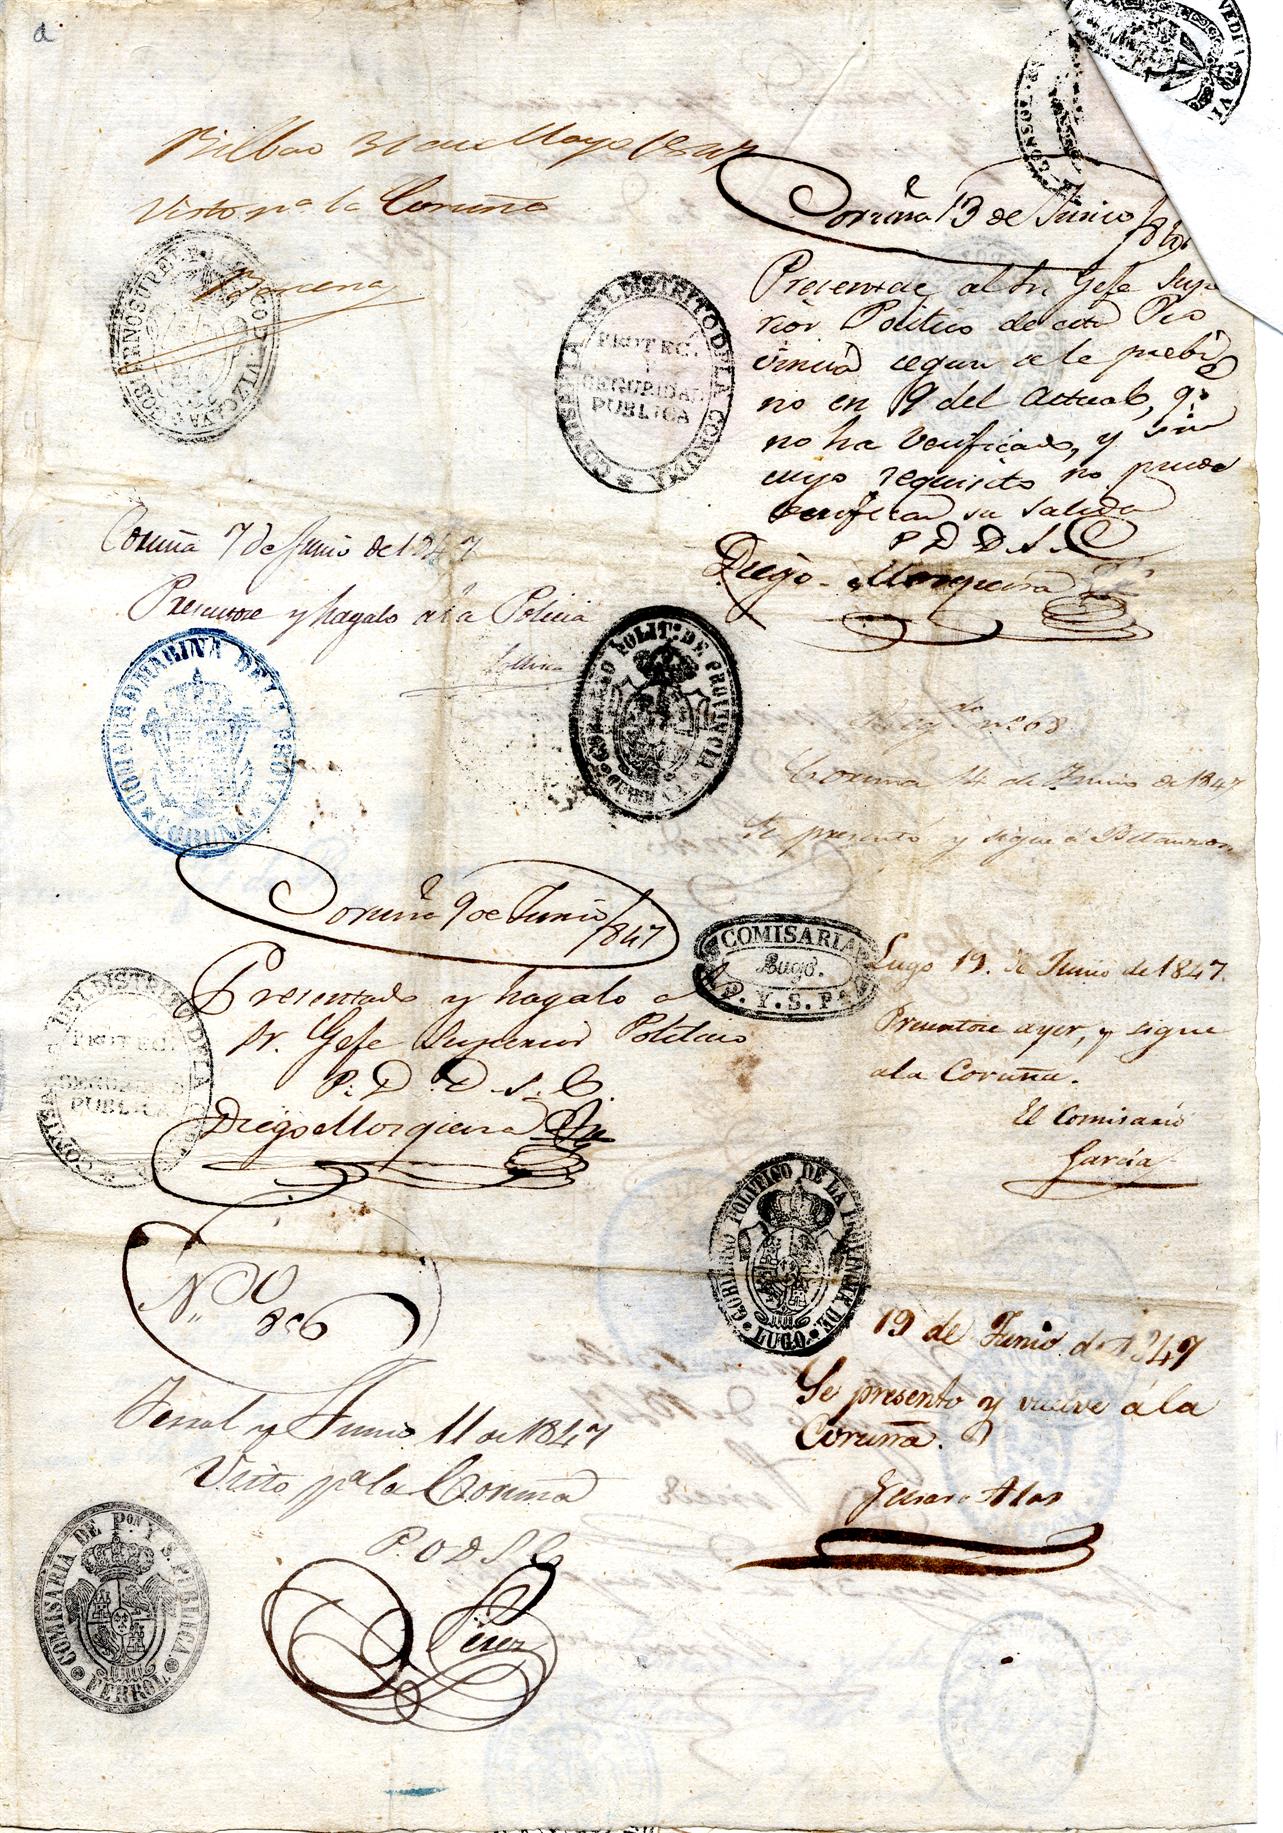 Passaporte de Giorgio Piretti